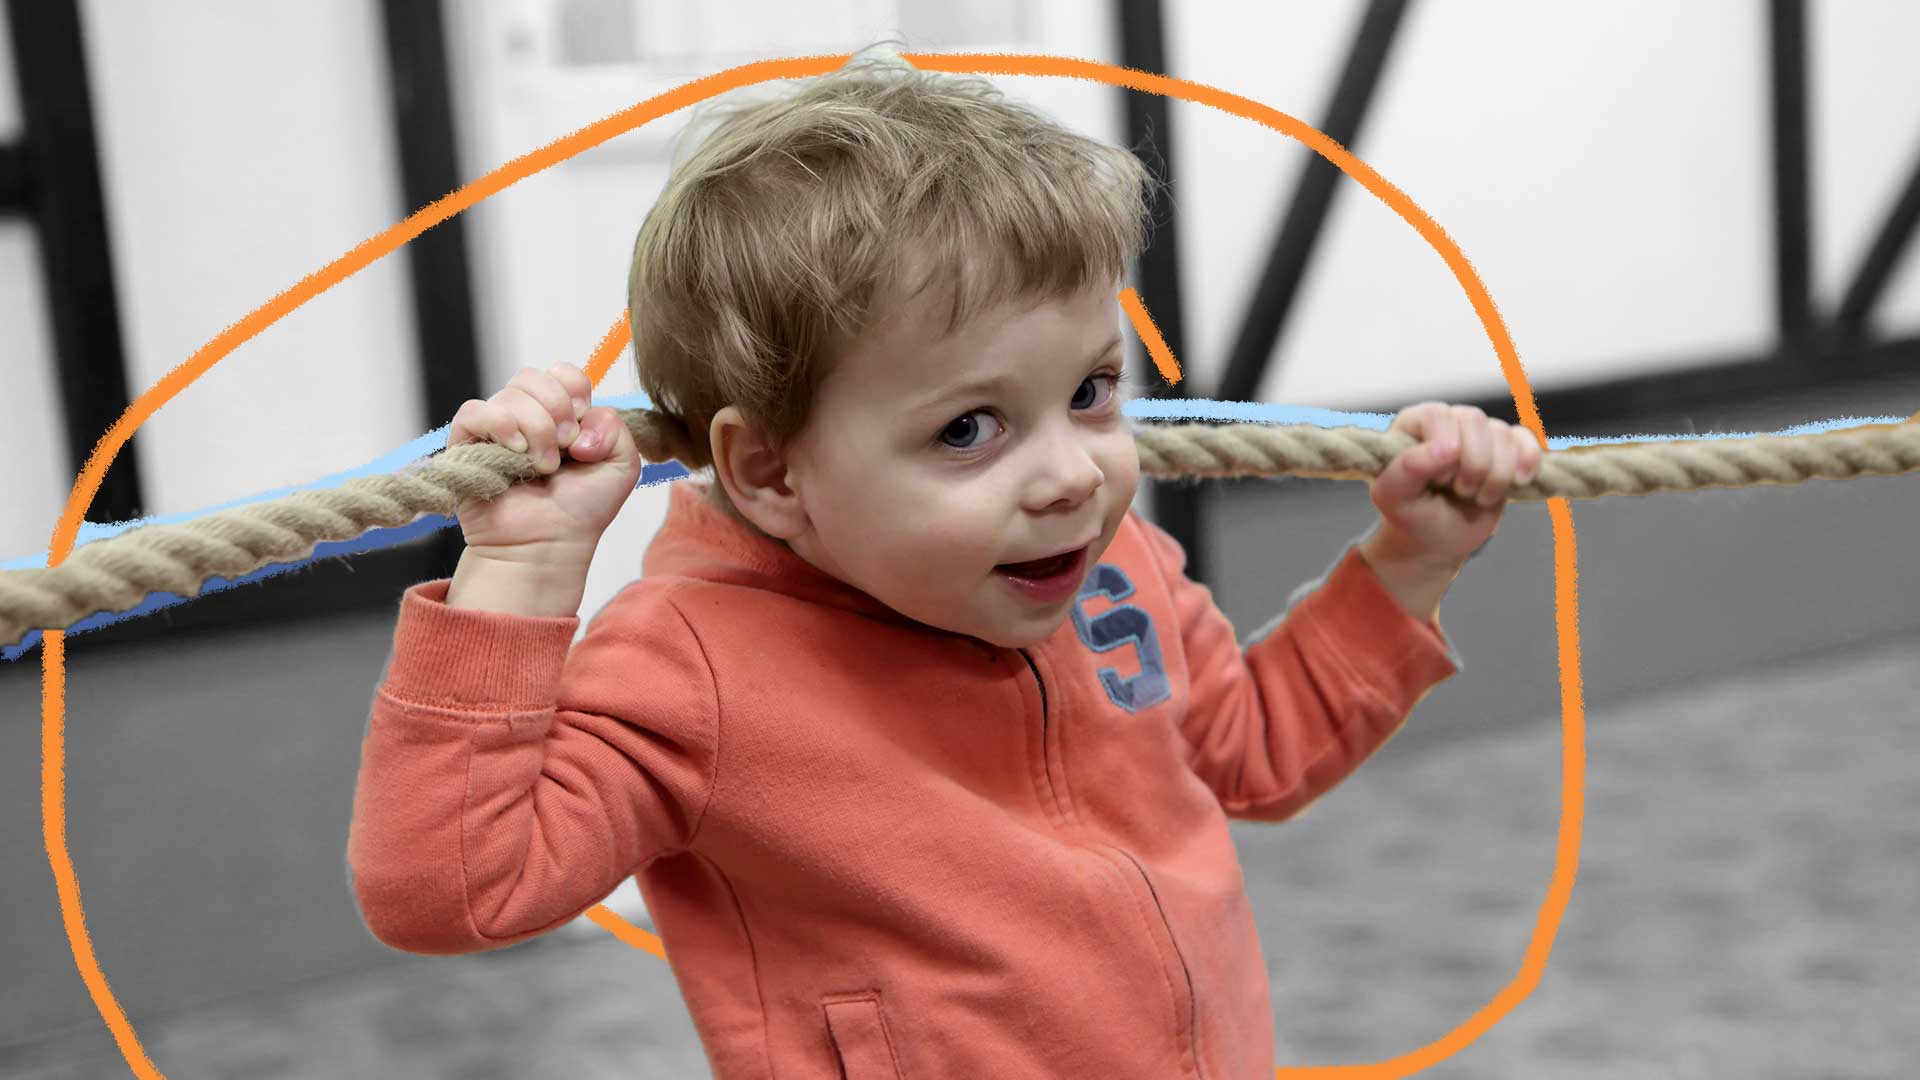 Um menino com um moletom laranja segura uma corda estendida atrás de sua cabeça